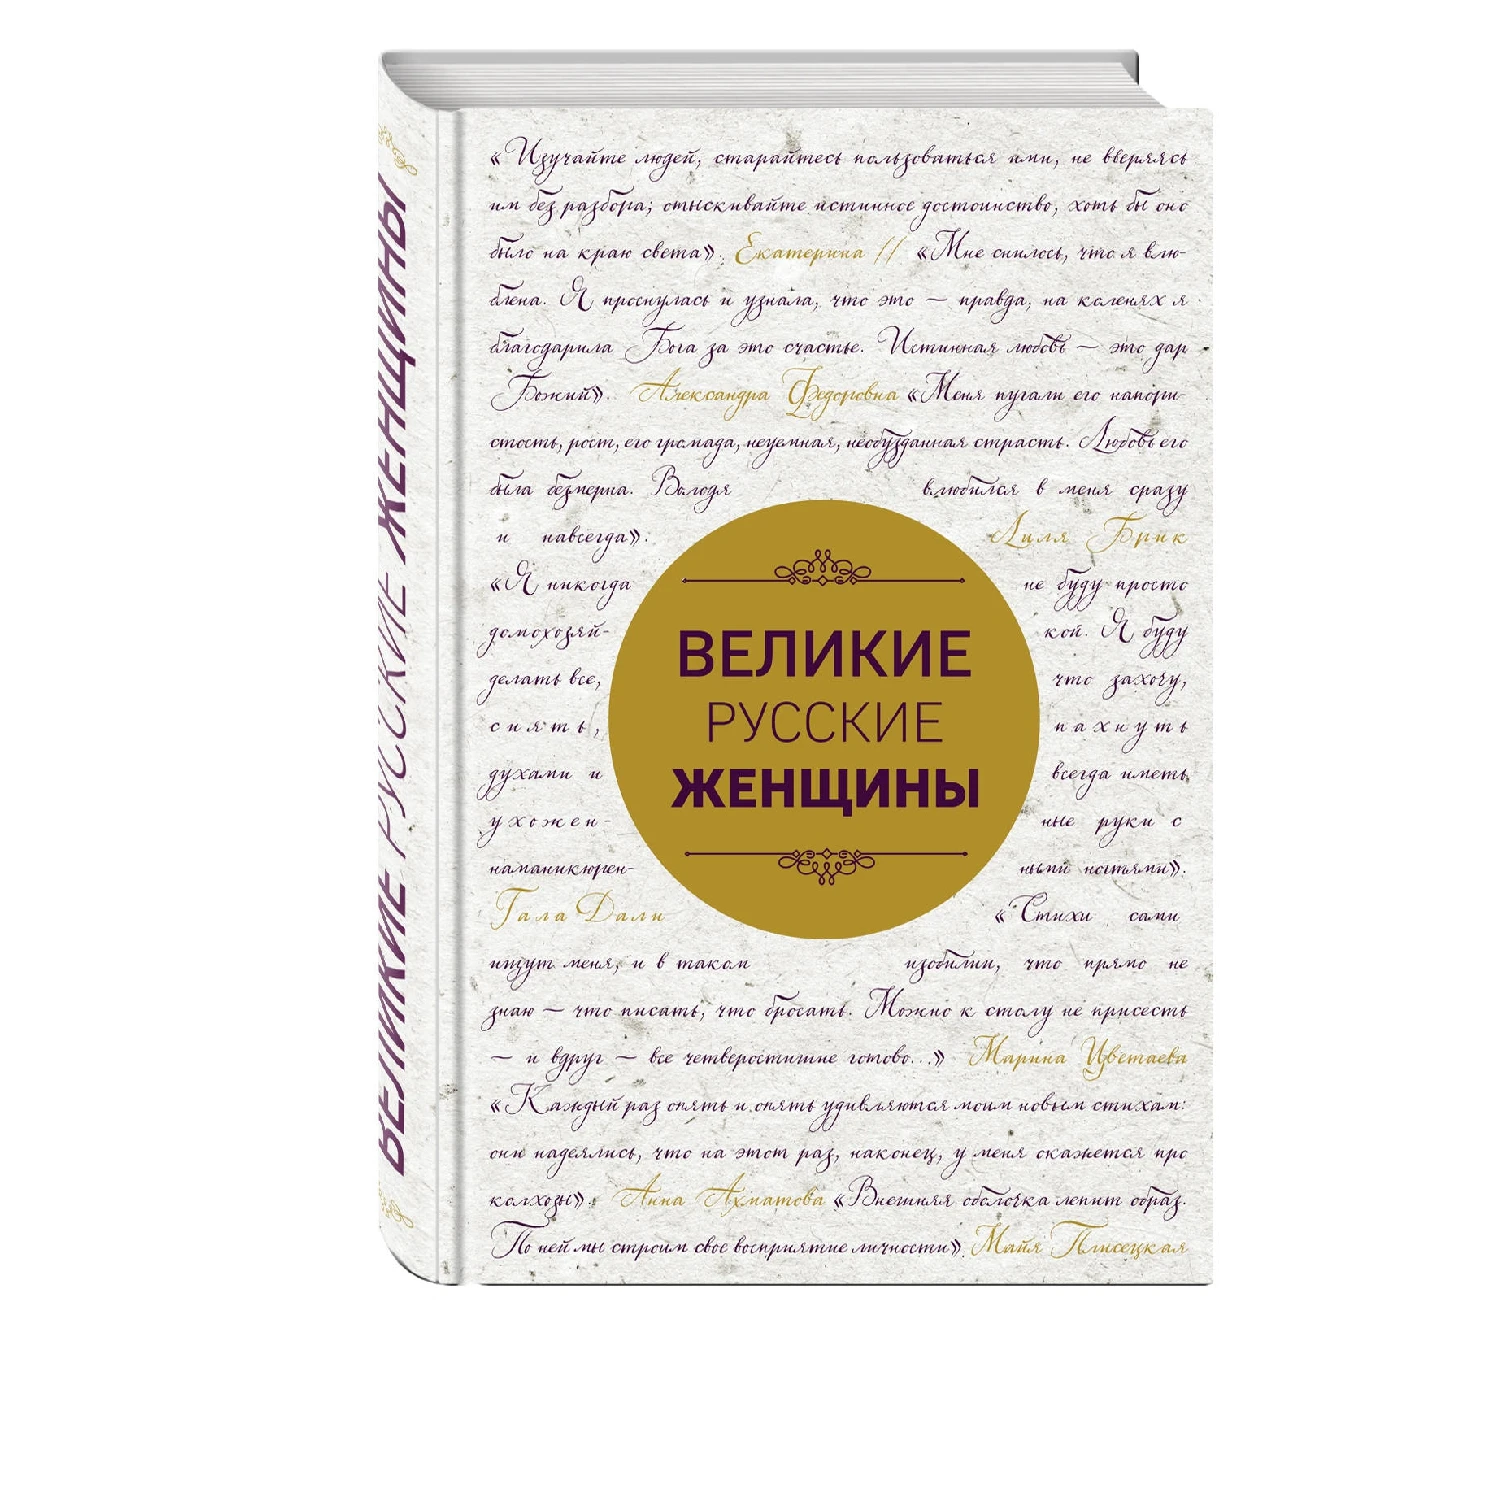 Великие русские женщины (шрифтовая) (978 5 699 94120 9 288 стр. 16+)|Биографии автобиографии